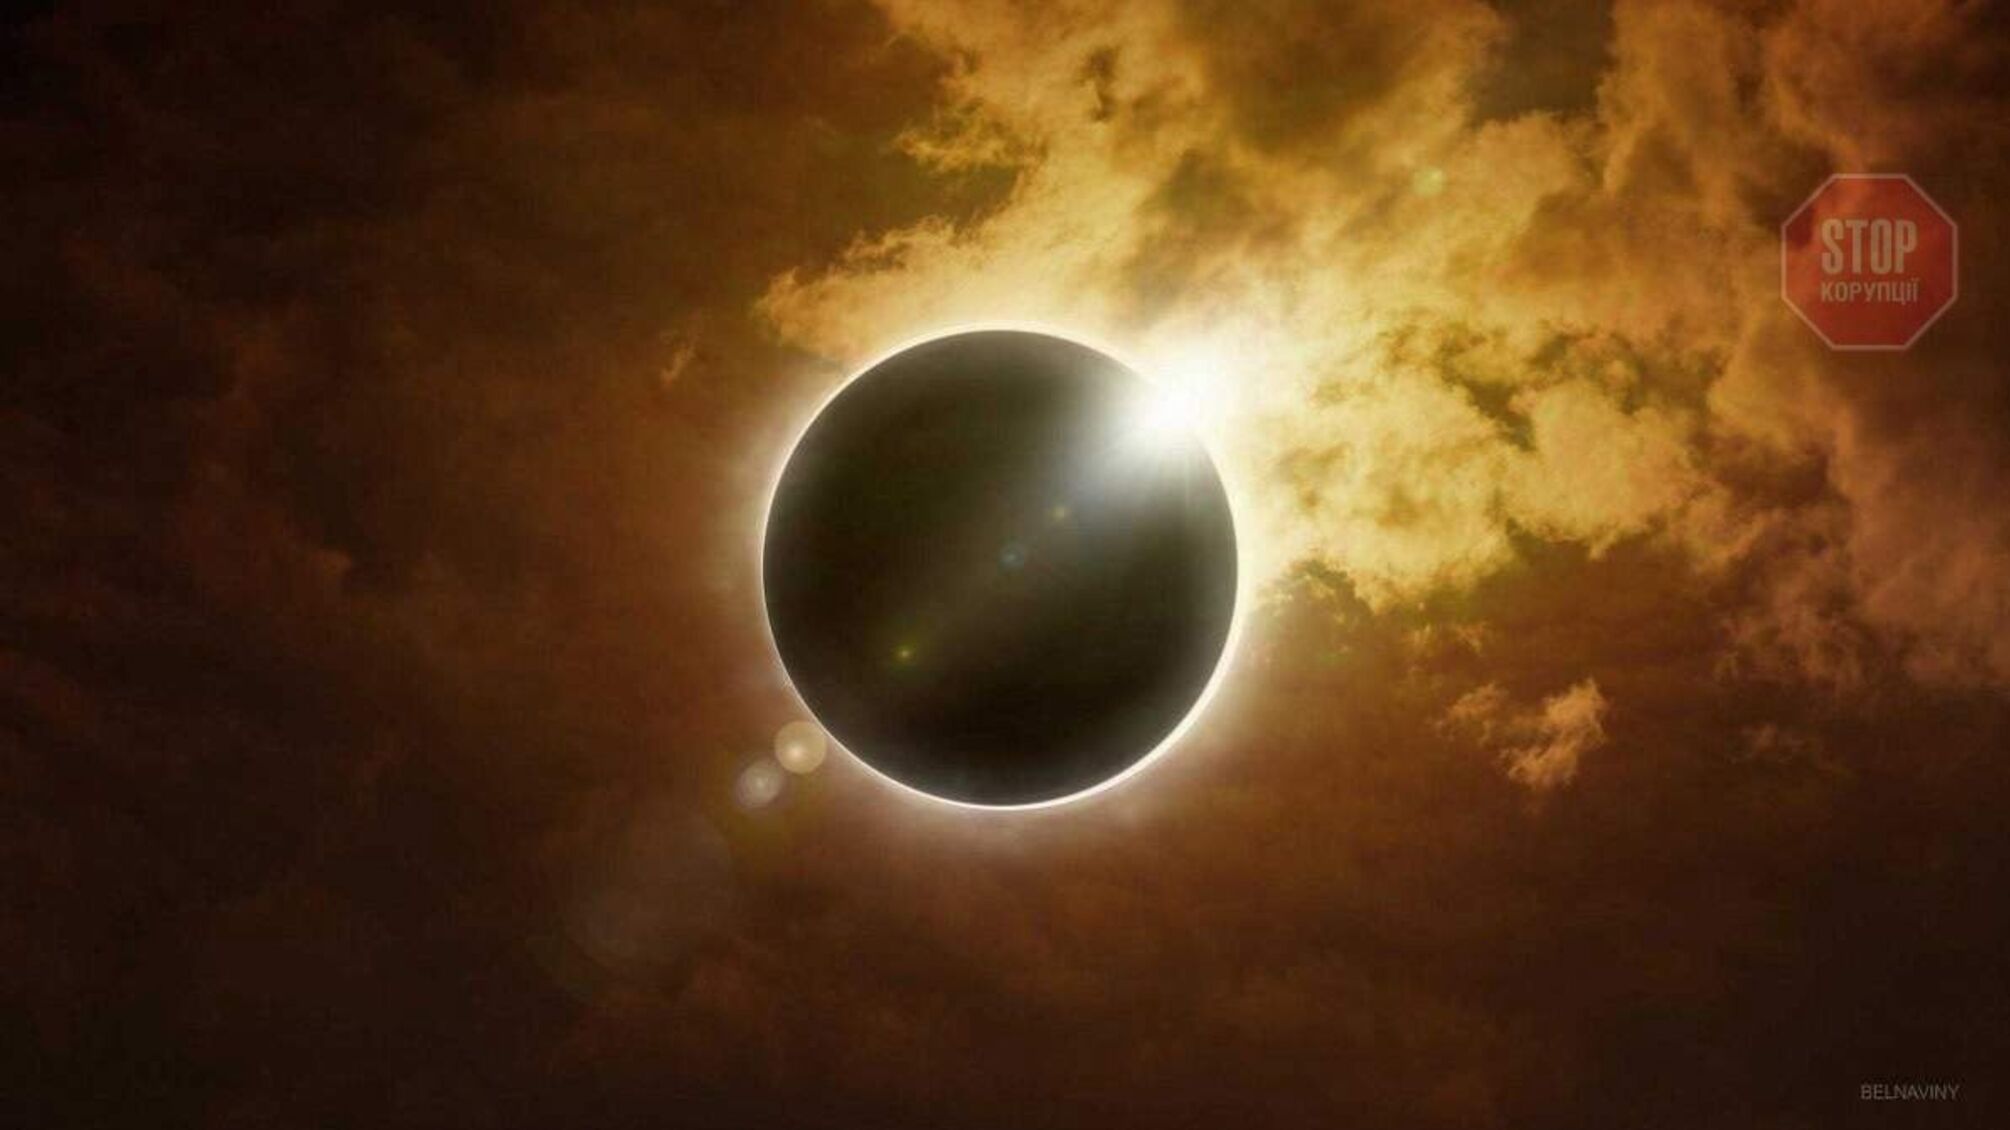 Українців застерегли дивитись на сонячне затемнення правильно: як це зробити